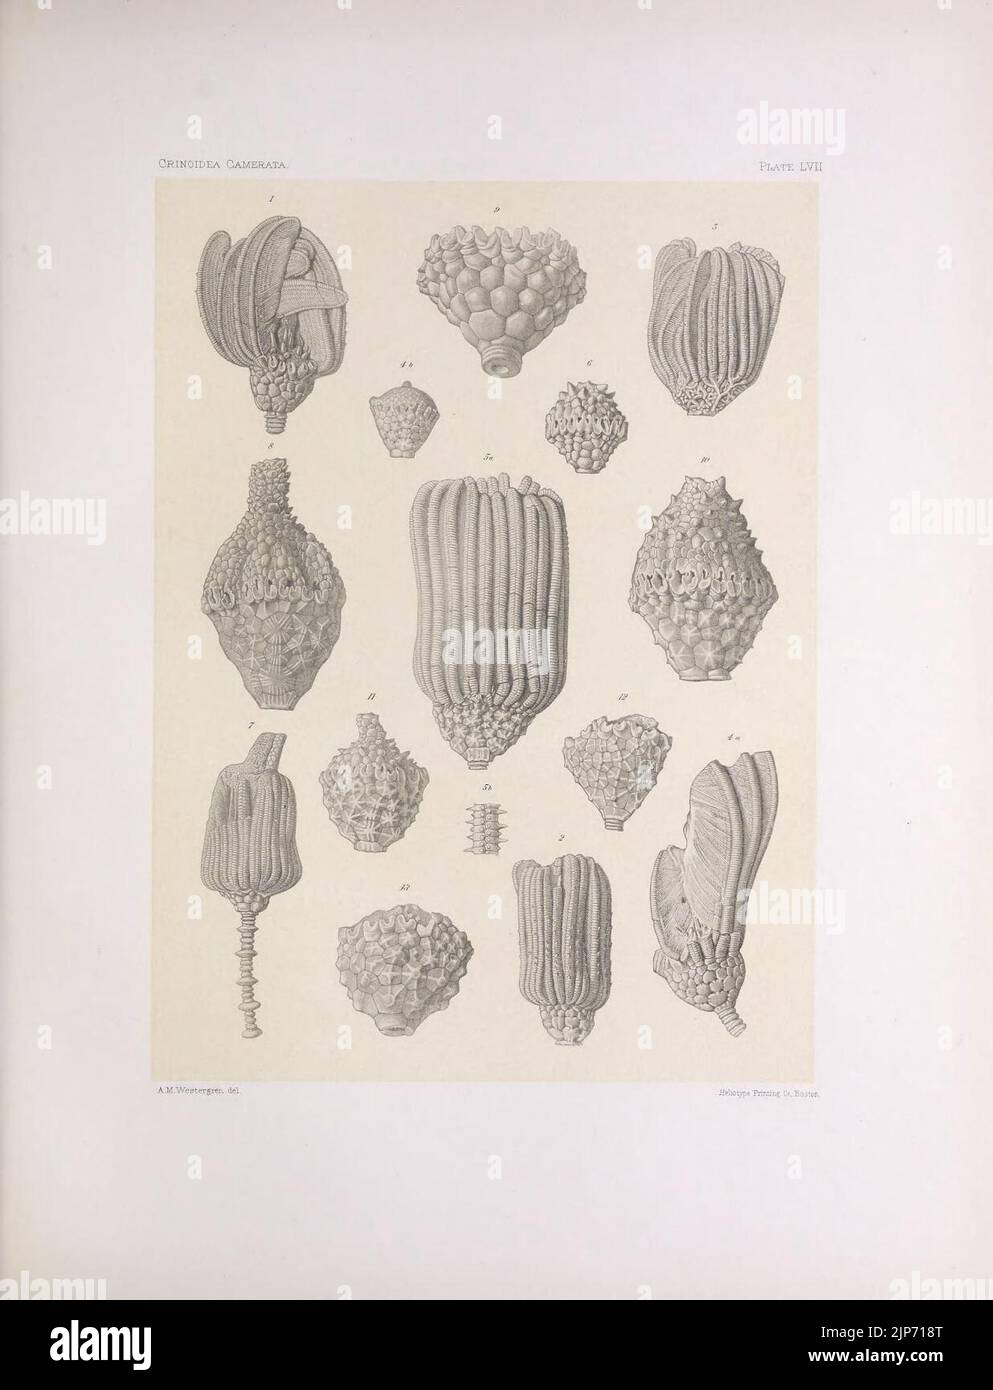 The North American Crinoidea camerata (PLATE LVII) (7401859170) Stock Photo